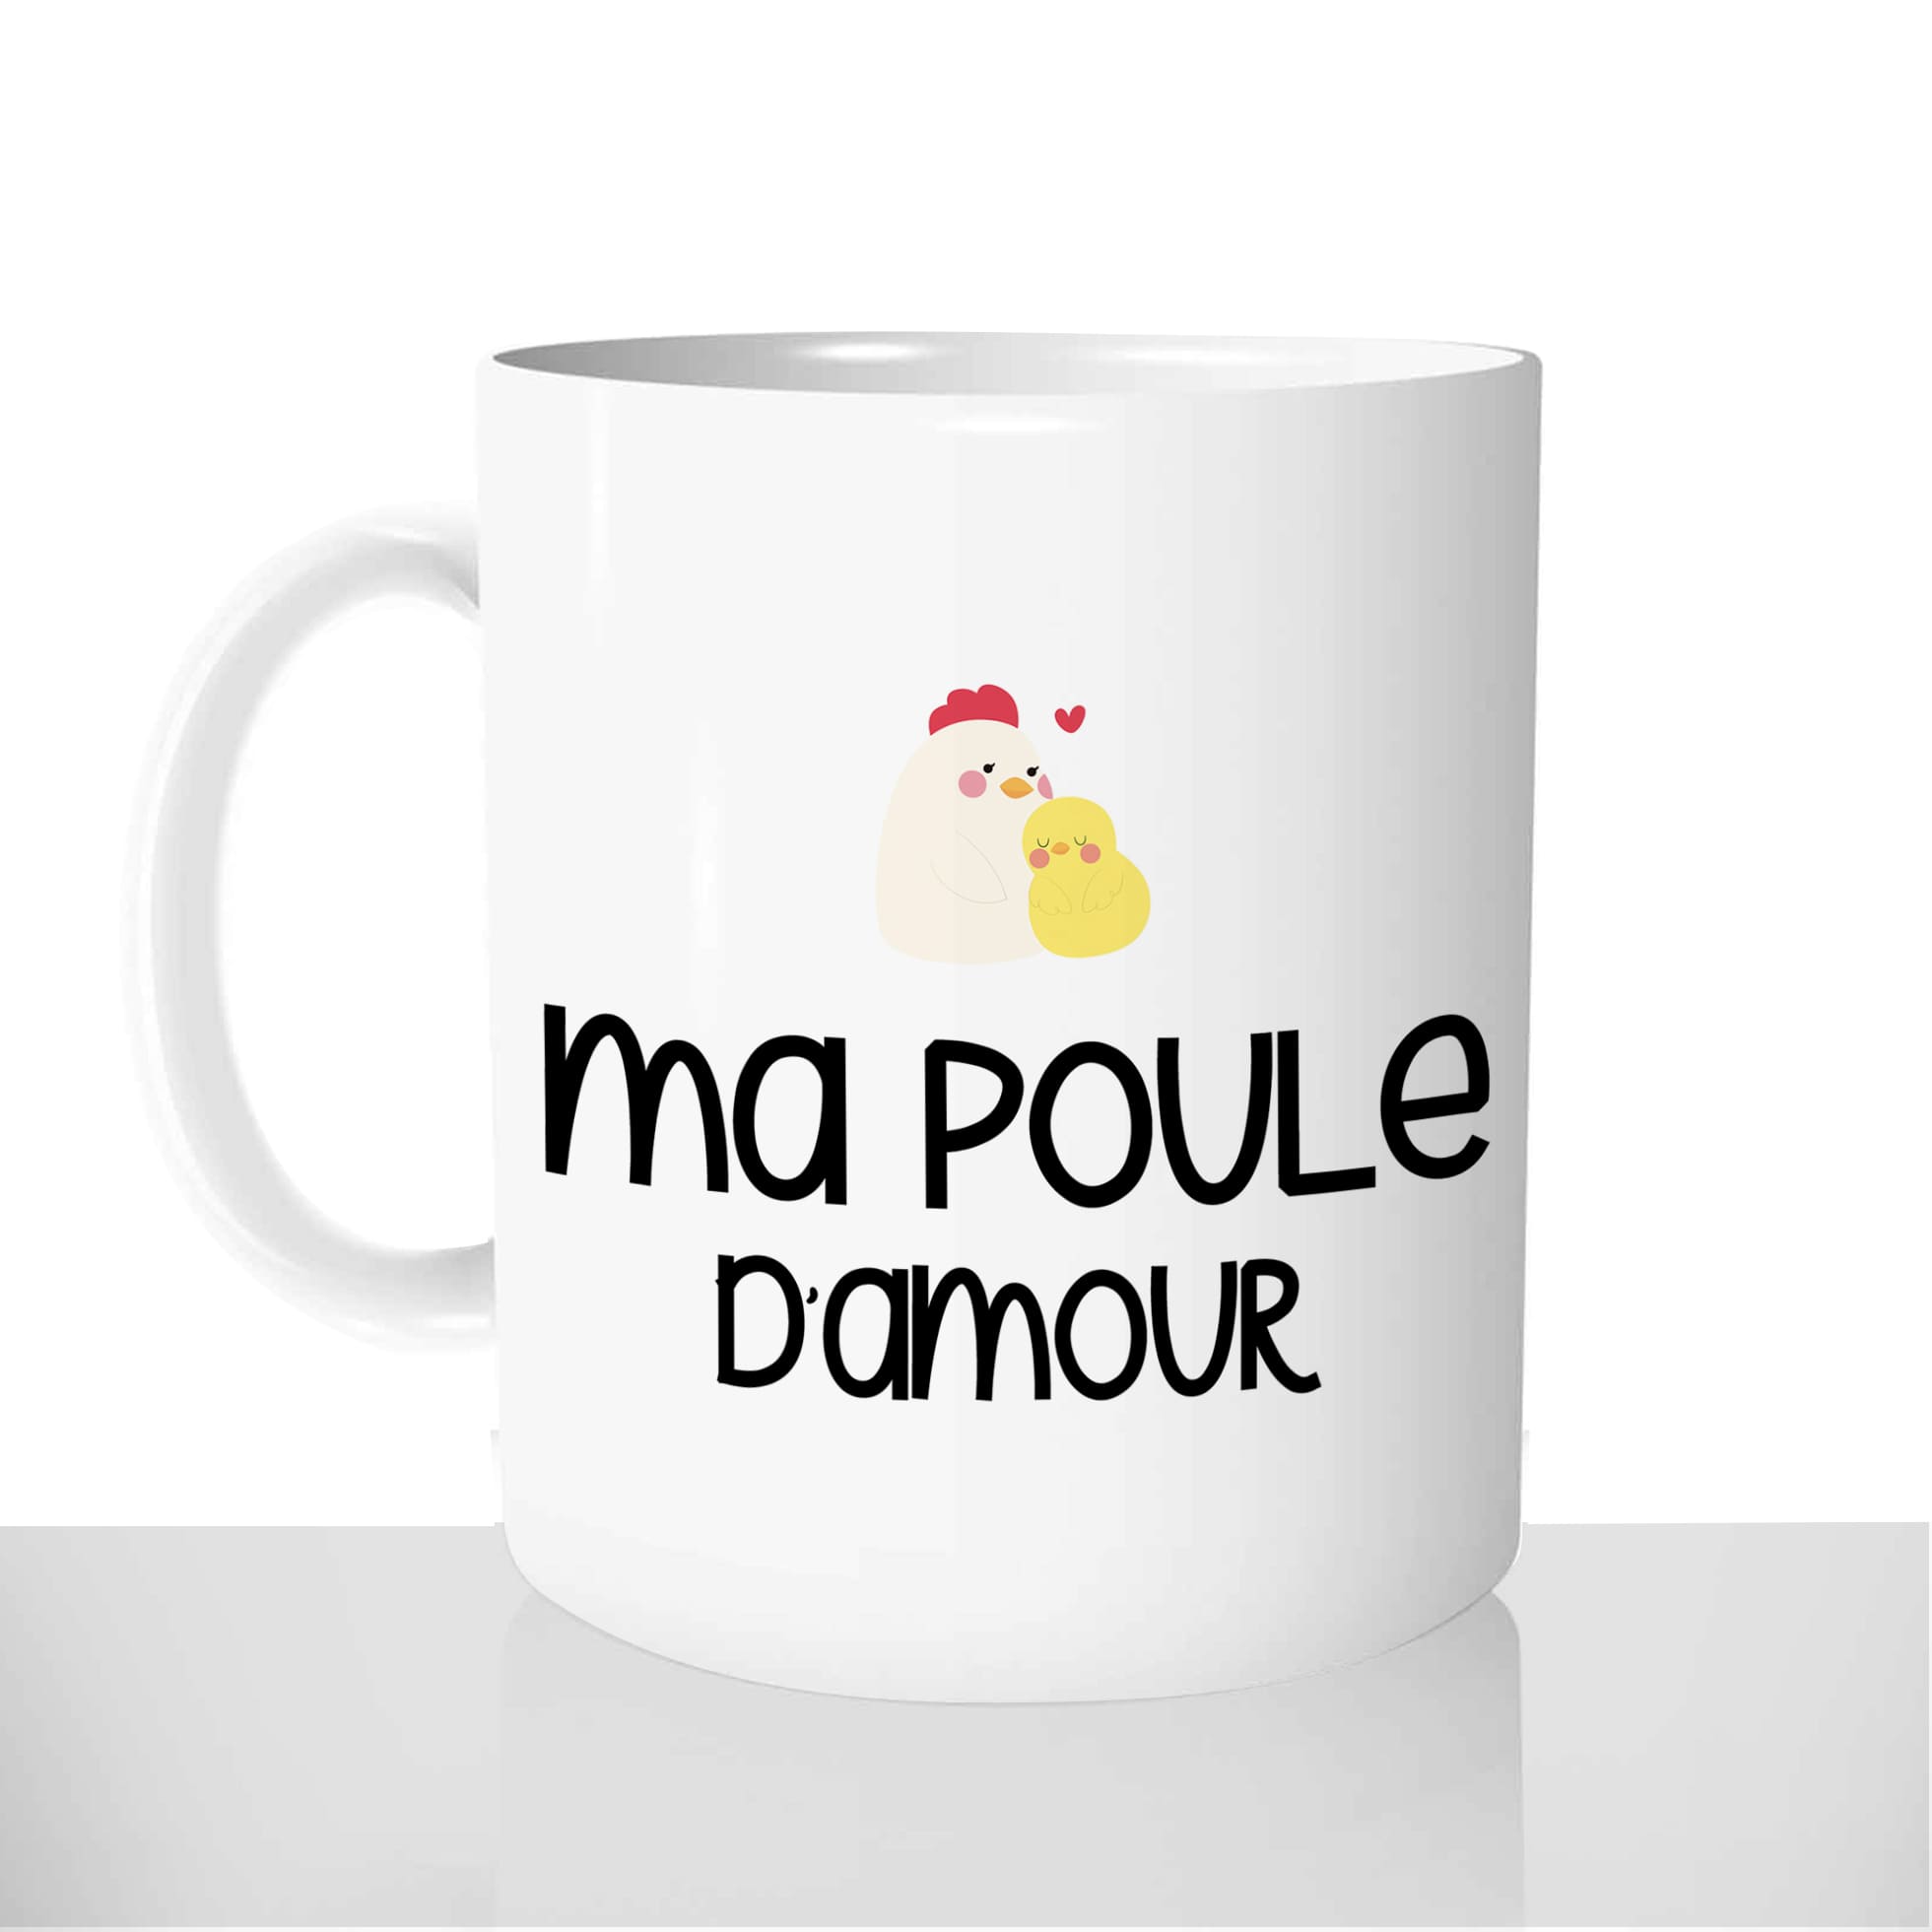 mug-blanc-céramique-personnalisable-tasse-11oz-ma-poule-damour-poussin-poulette-coeur-couple-personnalisé-fun-idée-cadeau-original